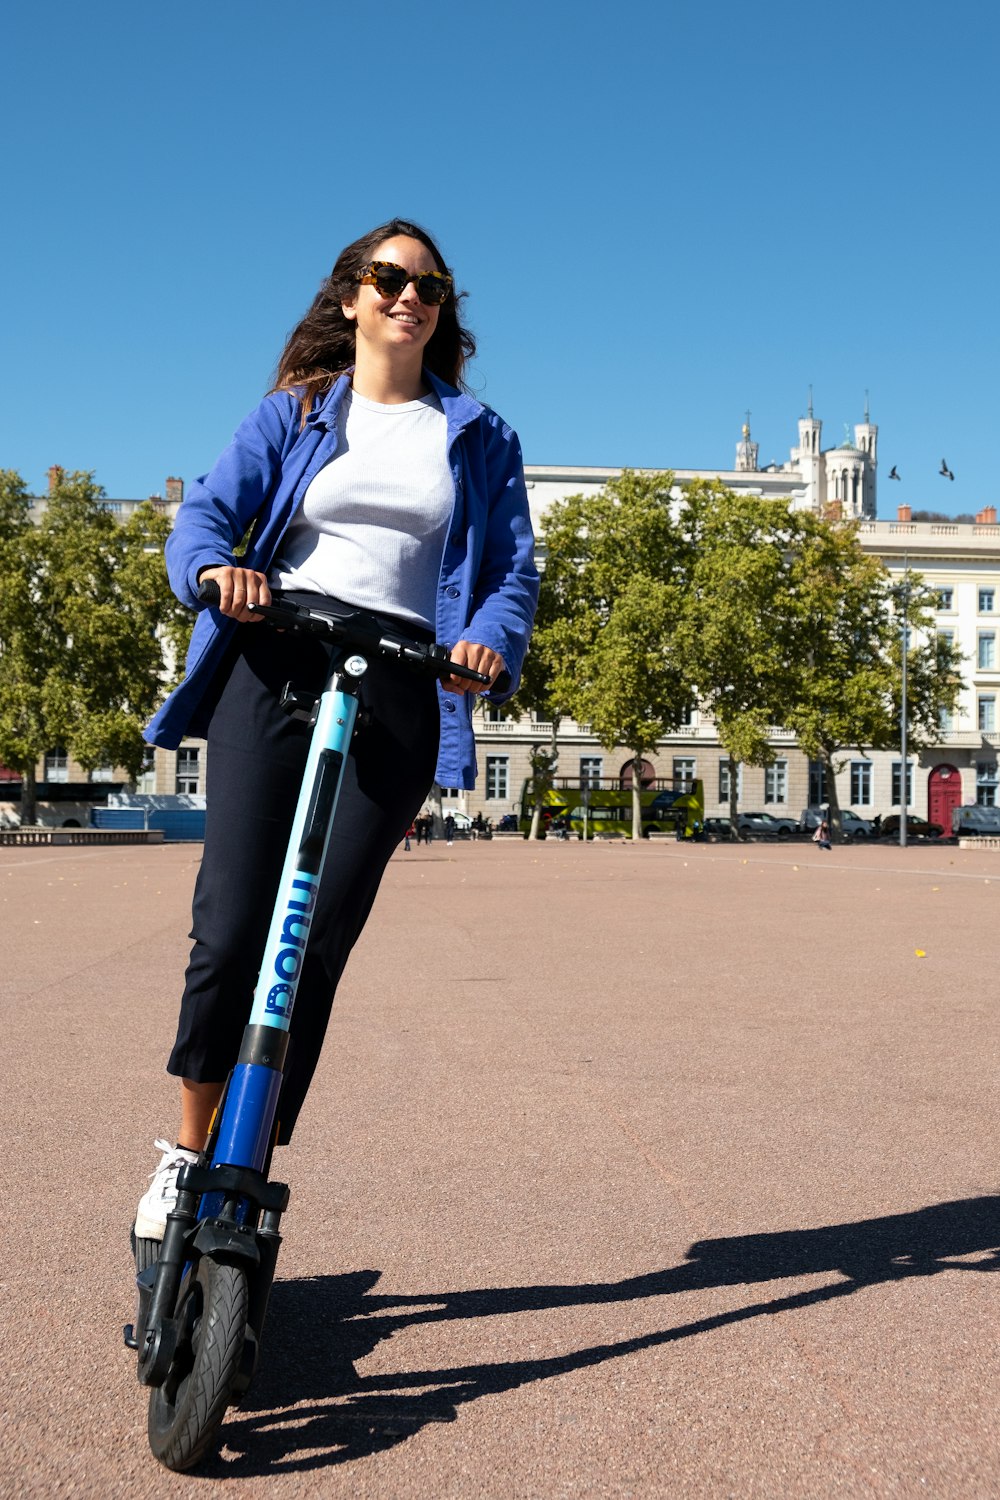 Una mujer montando un scooter en un estacionamiento